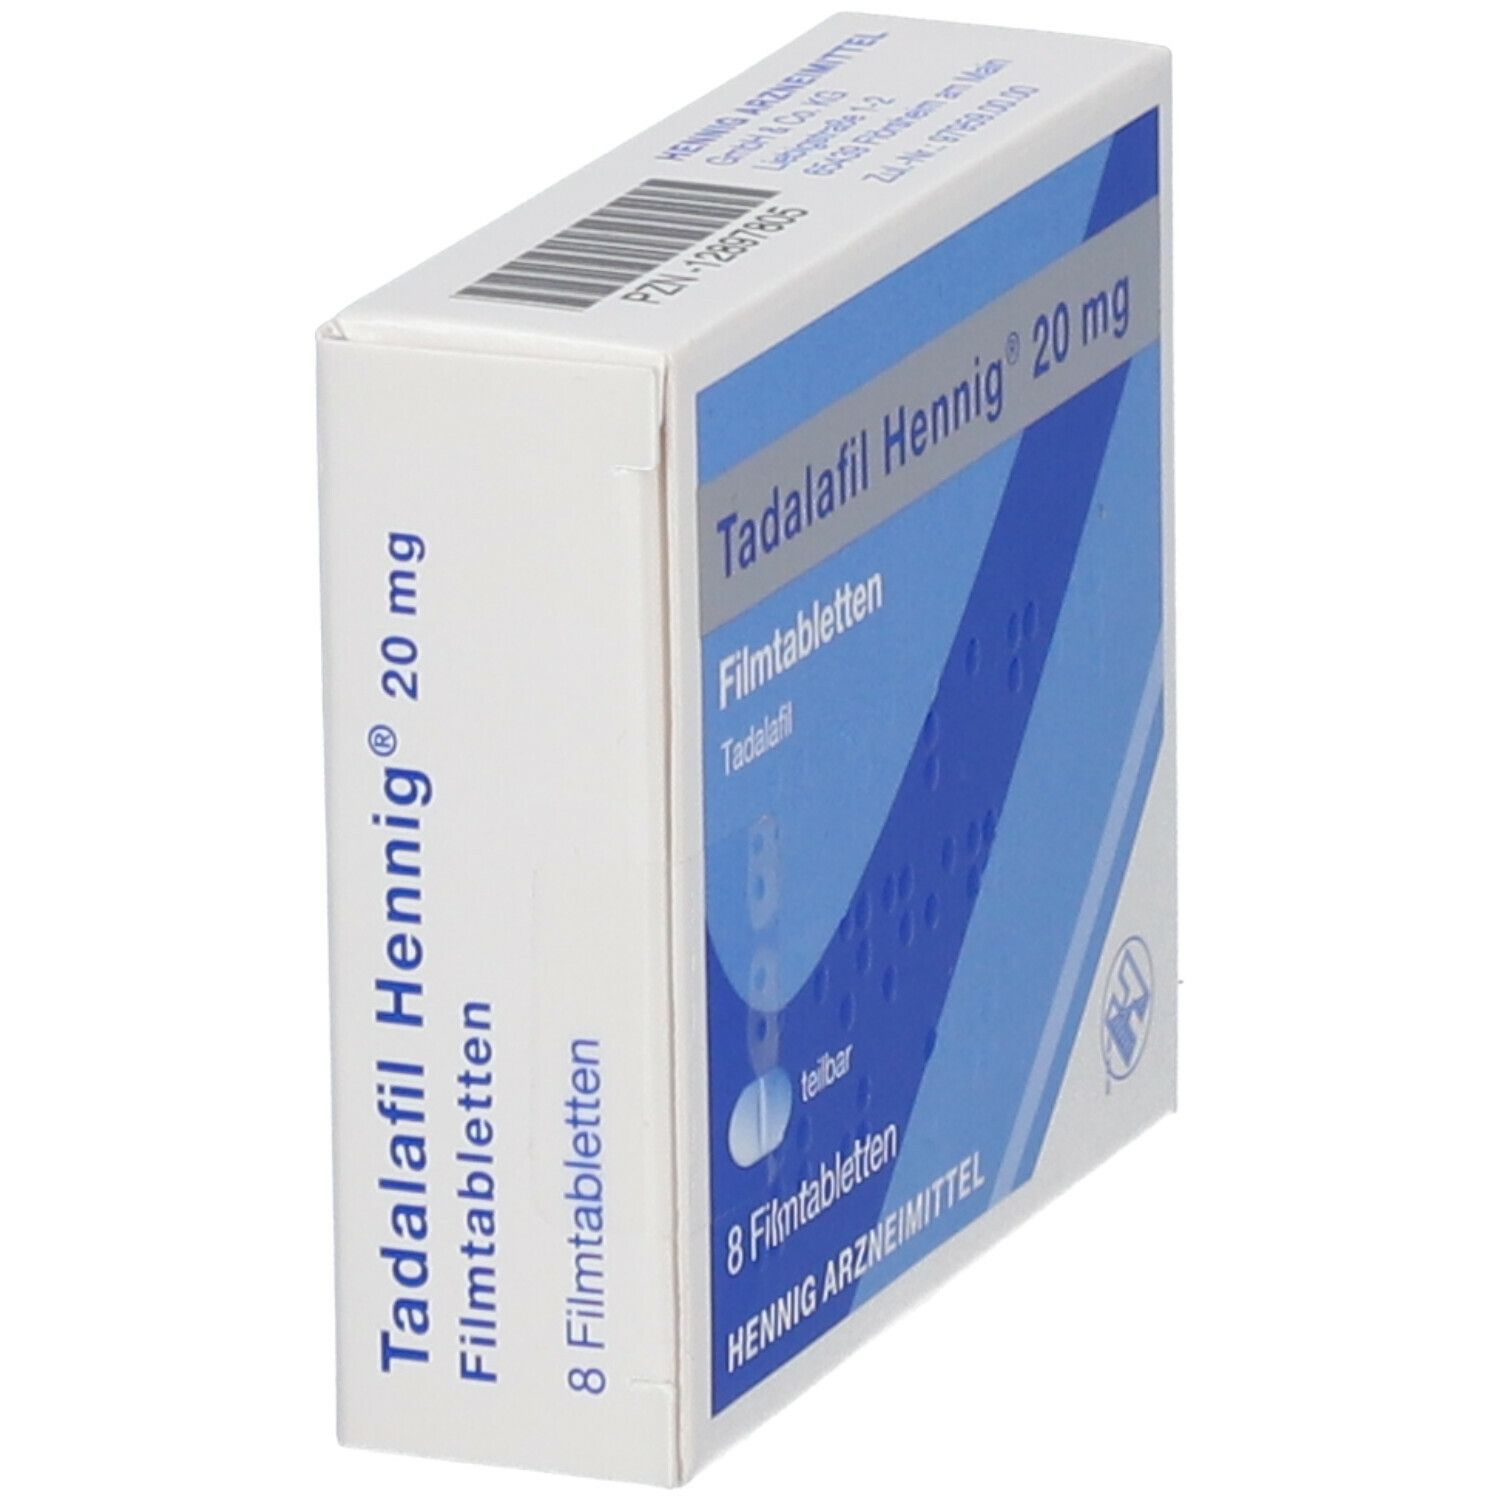 Tadalafil Hennig® 20 mg